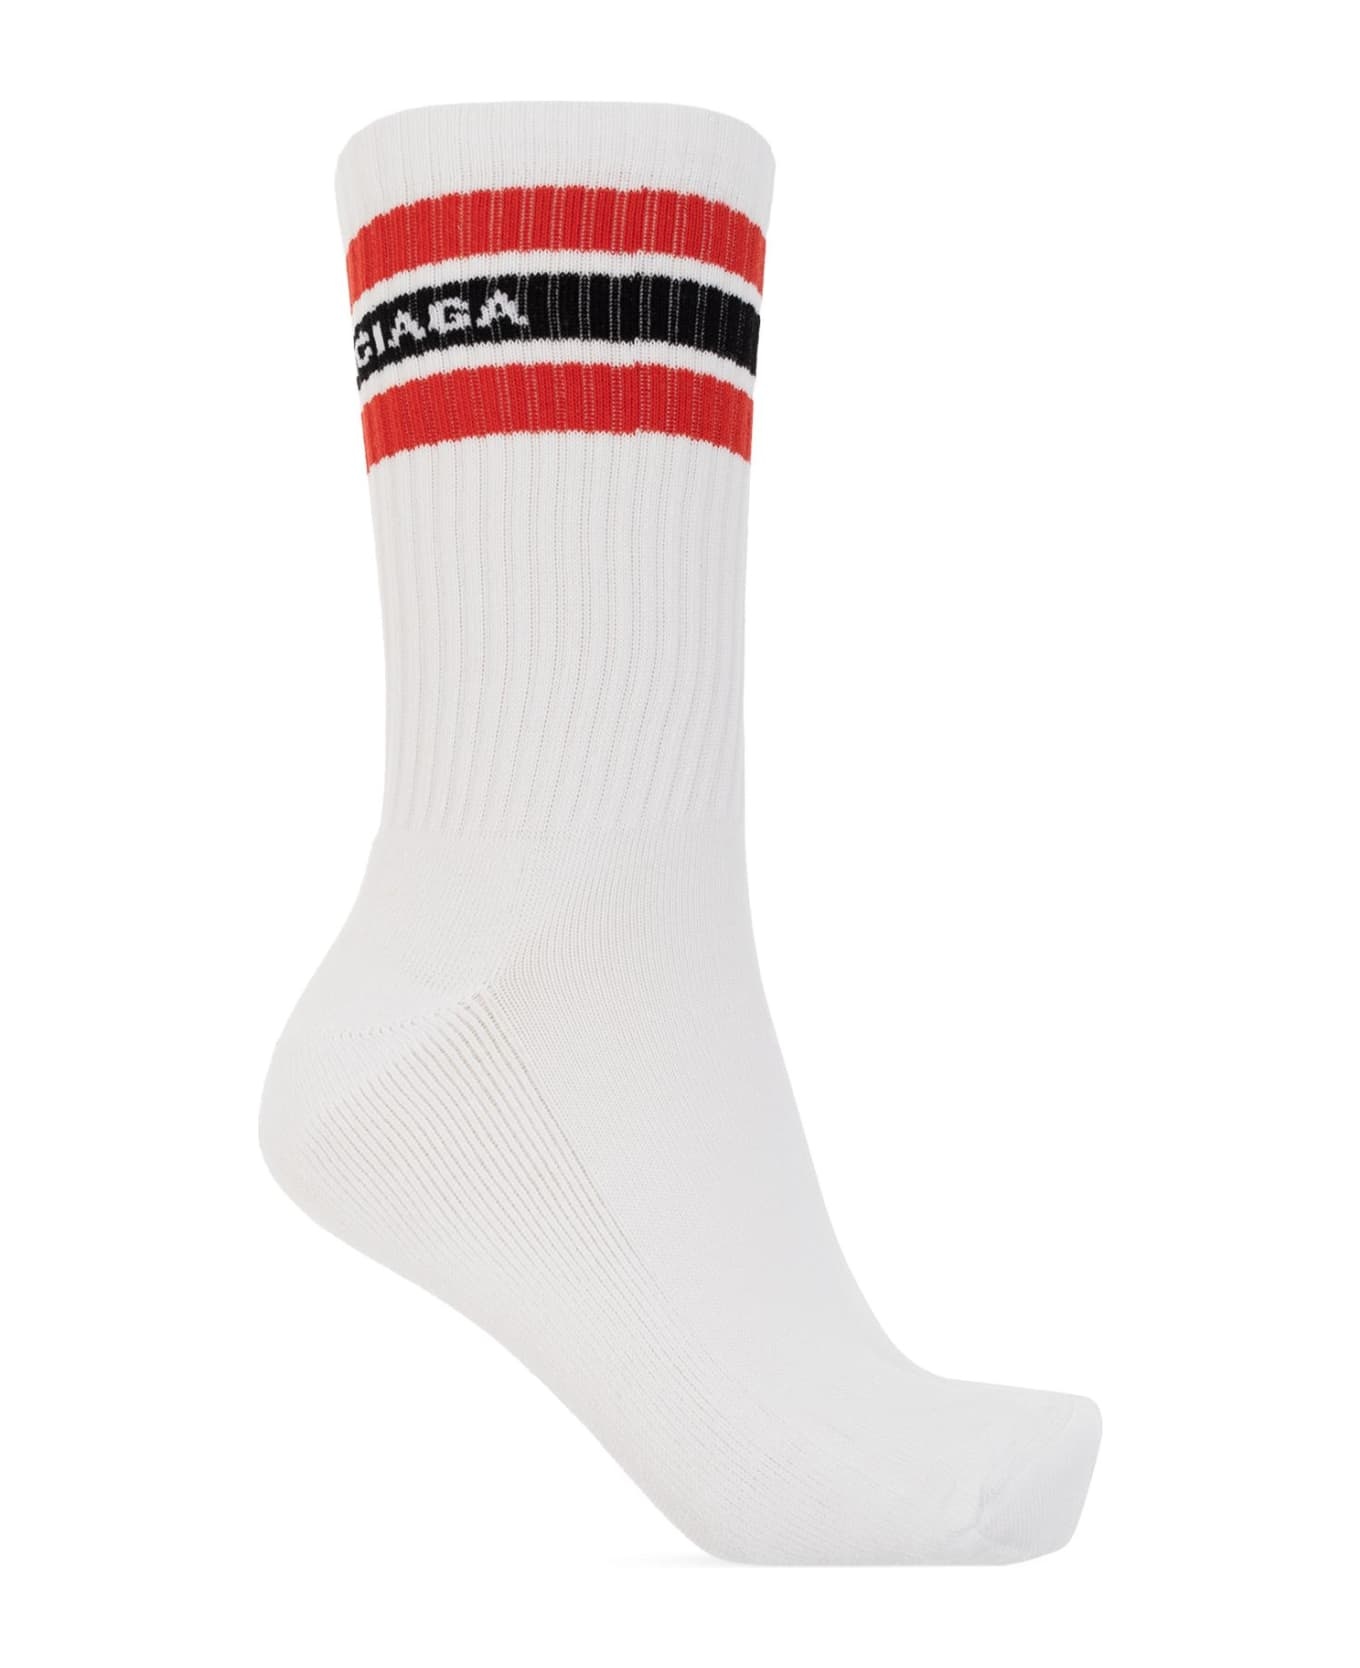 Branded Socks - 1